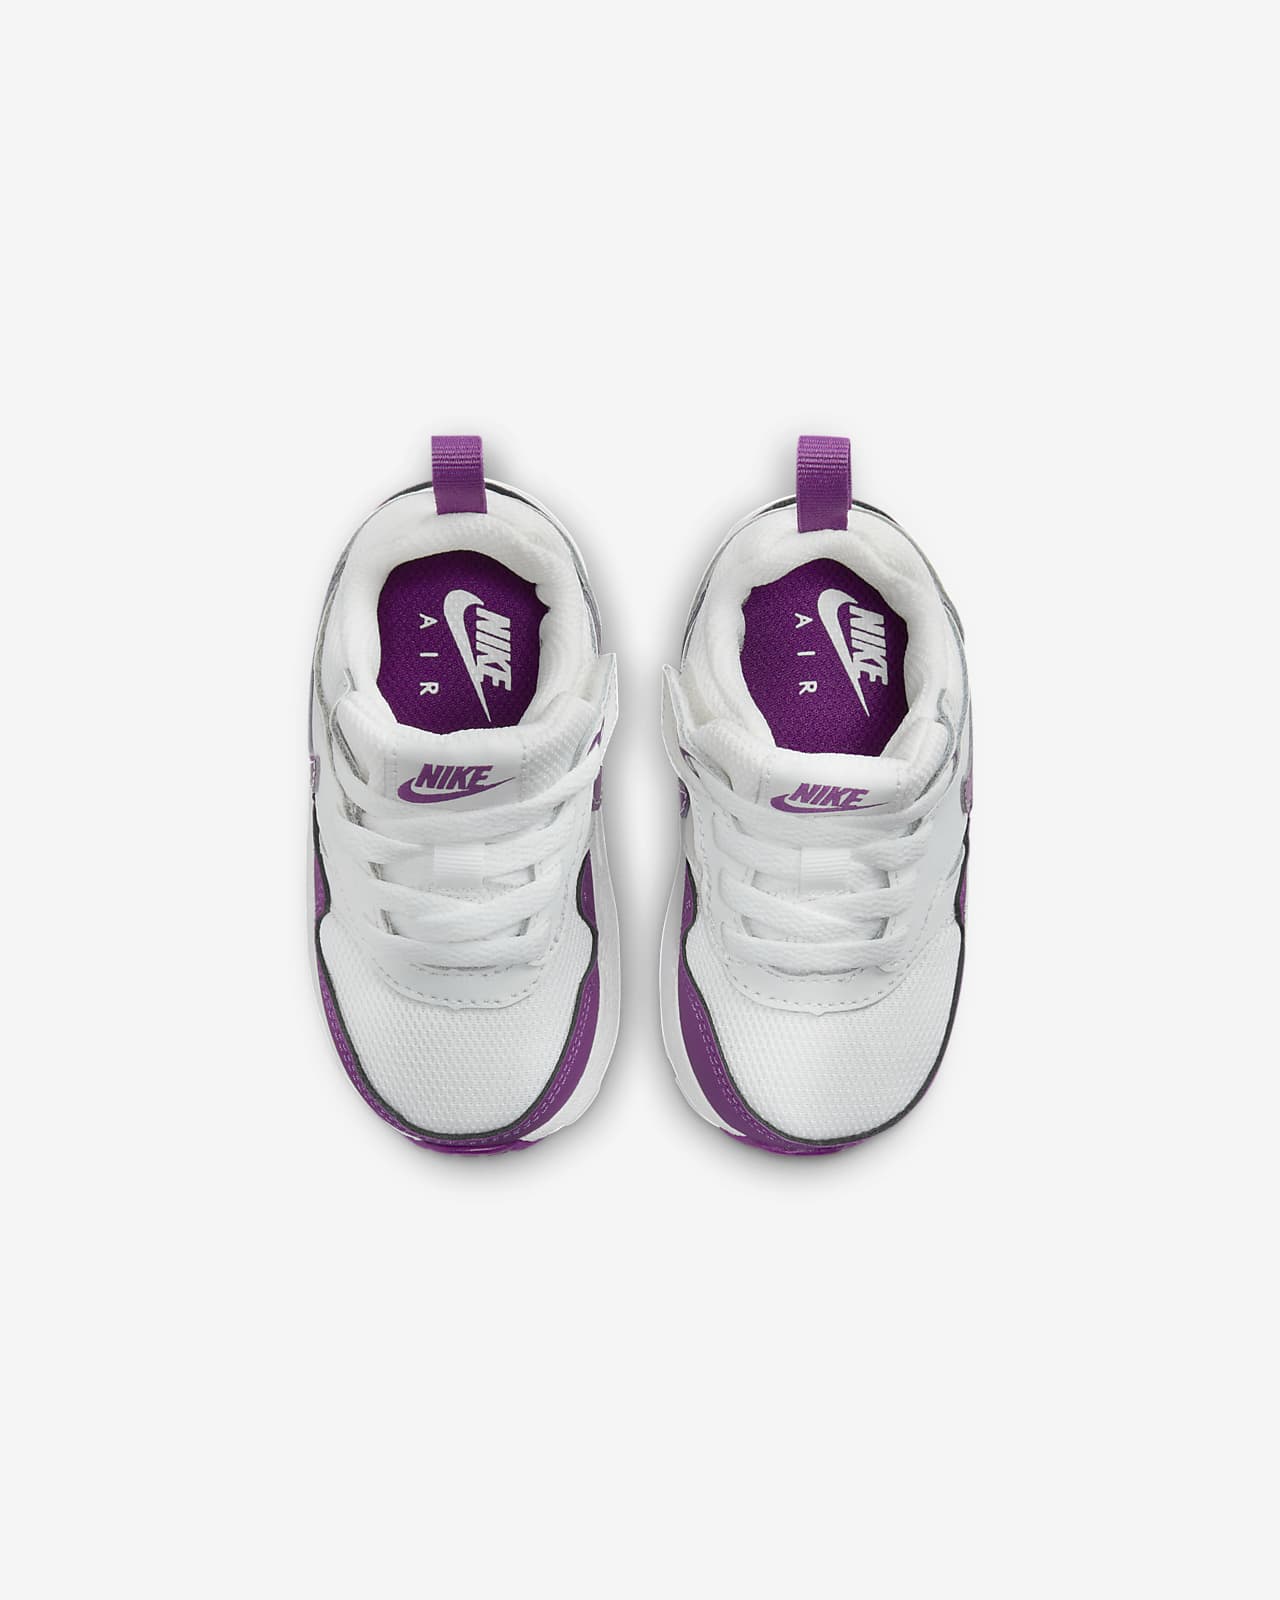 Air Max 1 EasyOn Baby/Toddler Shoes. Nike LU